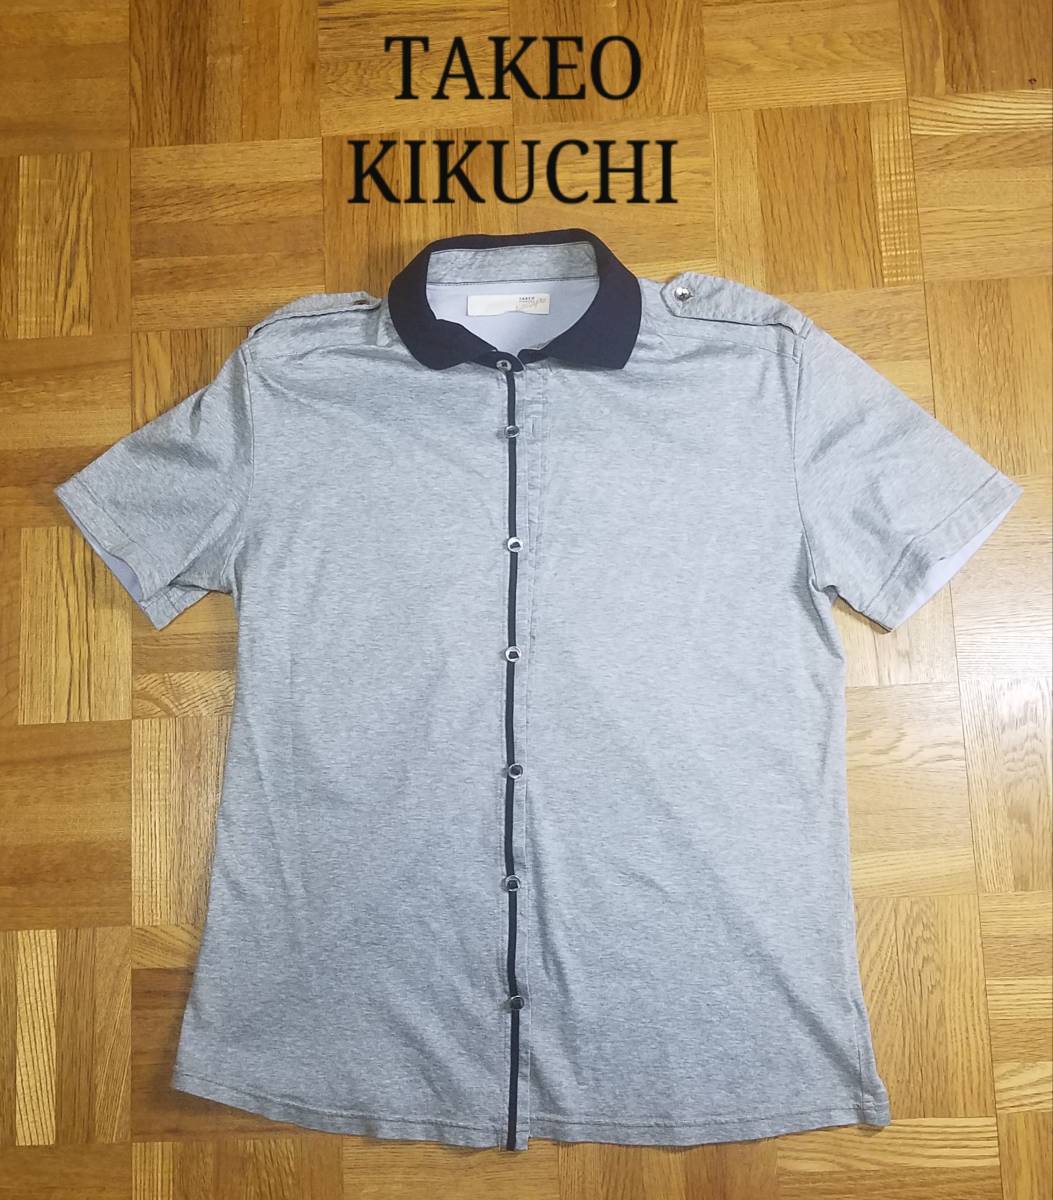  прекрасный товар TAKEO KIKUCHI Takeo Kikuchi мужской короткий рукав tops рубашка хлопок серый L размер 